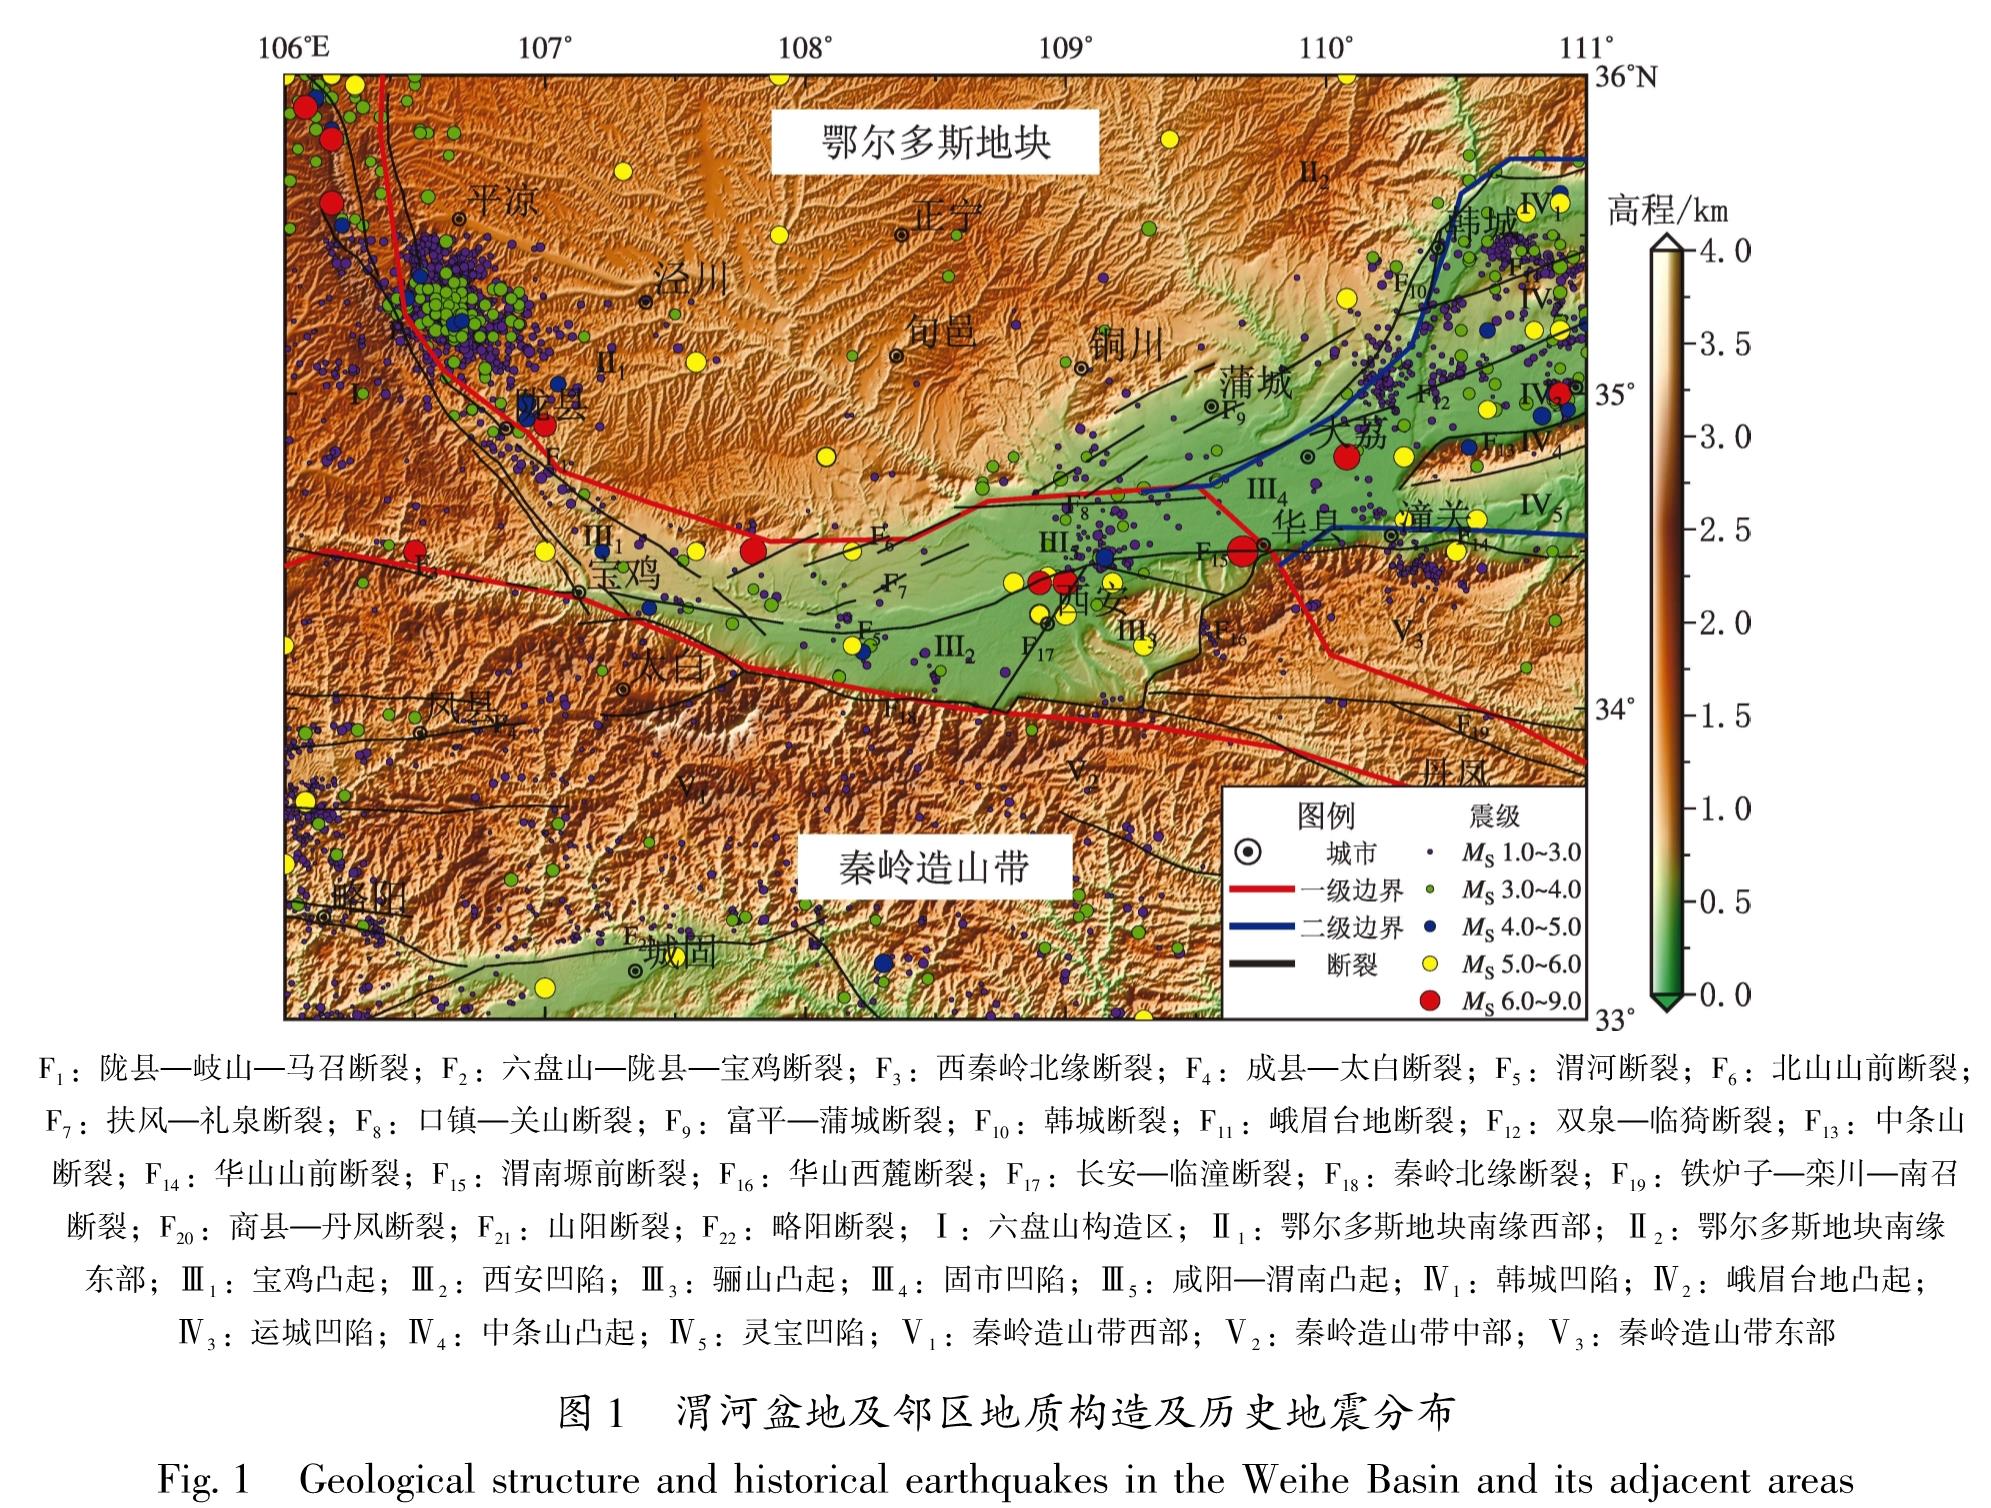 图1 渭河盆地及邻区地质构造及历史地震分布<br/>Fig.1 Geological structure and historical earthquakes in the Weihe Basin and its adjacent areas